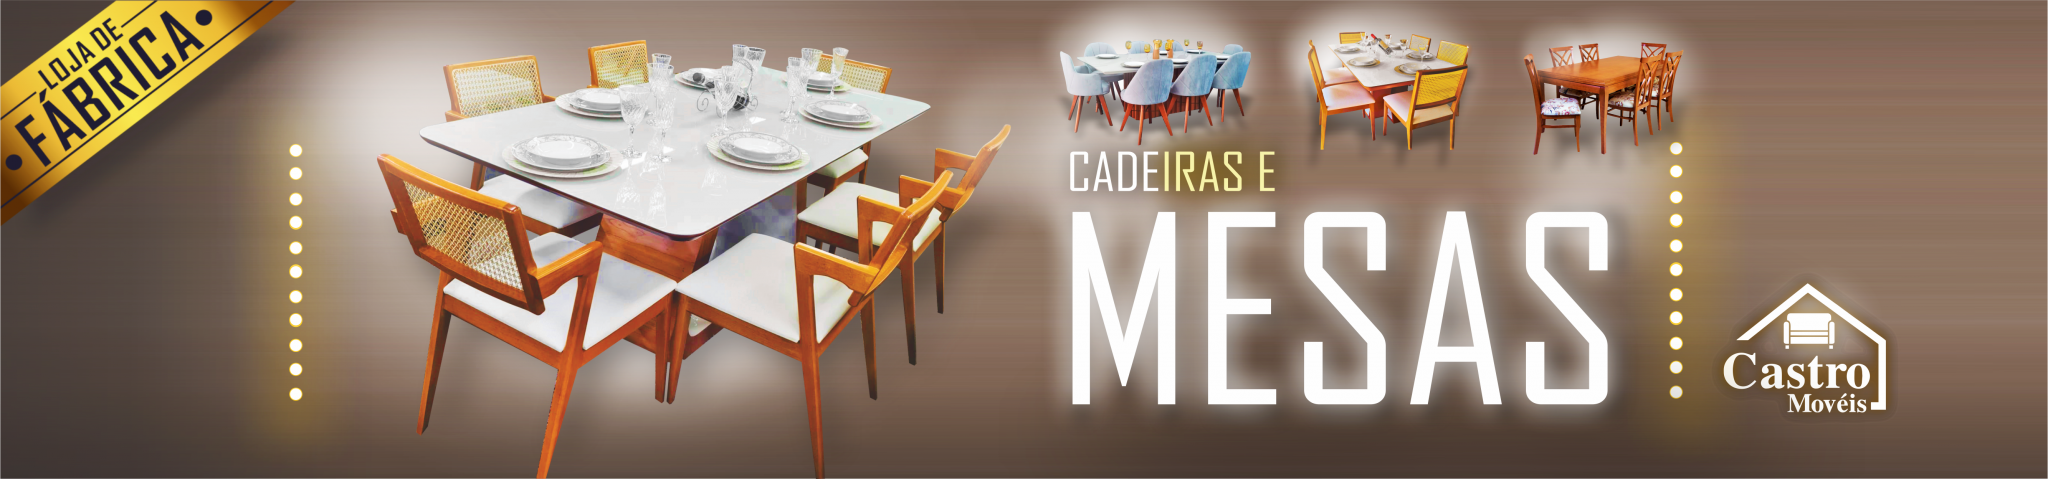 Banner-Cadeiras-e-Mesas-Site-Desktop-Castro-Móveis-1-2048x479